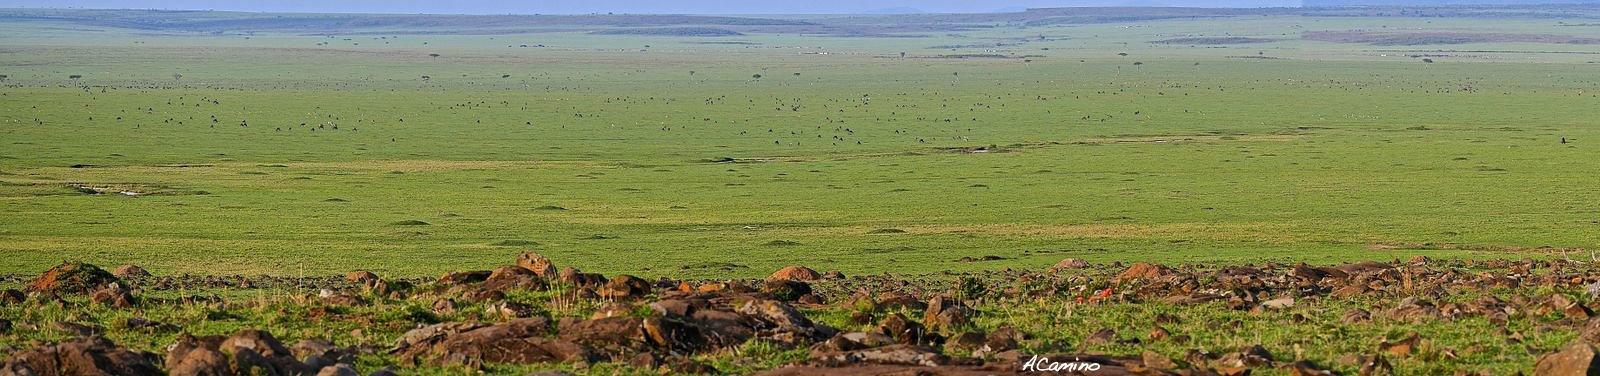 12 días de Safari en Kenia: Jambo bwana - Blogs de Kenia - El parto de una gacela en un Masai Mara, lleno de búfalos, leones, guepardos... (48)